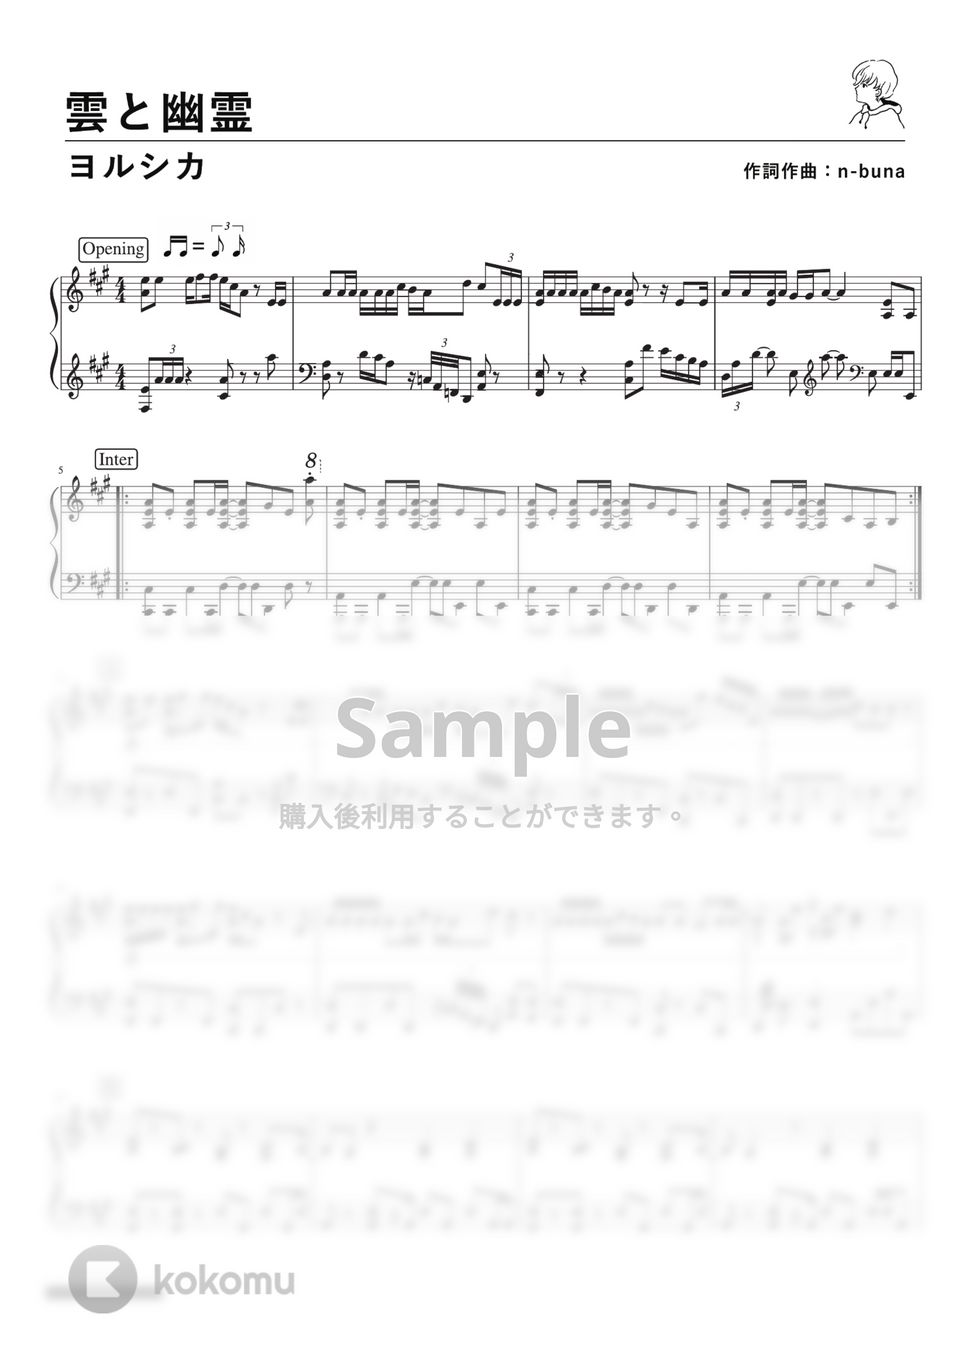 ヨルシカ - 雲と幽霊 (PianoSolo) by 深根 / Fukane